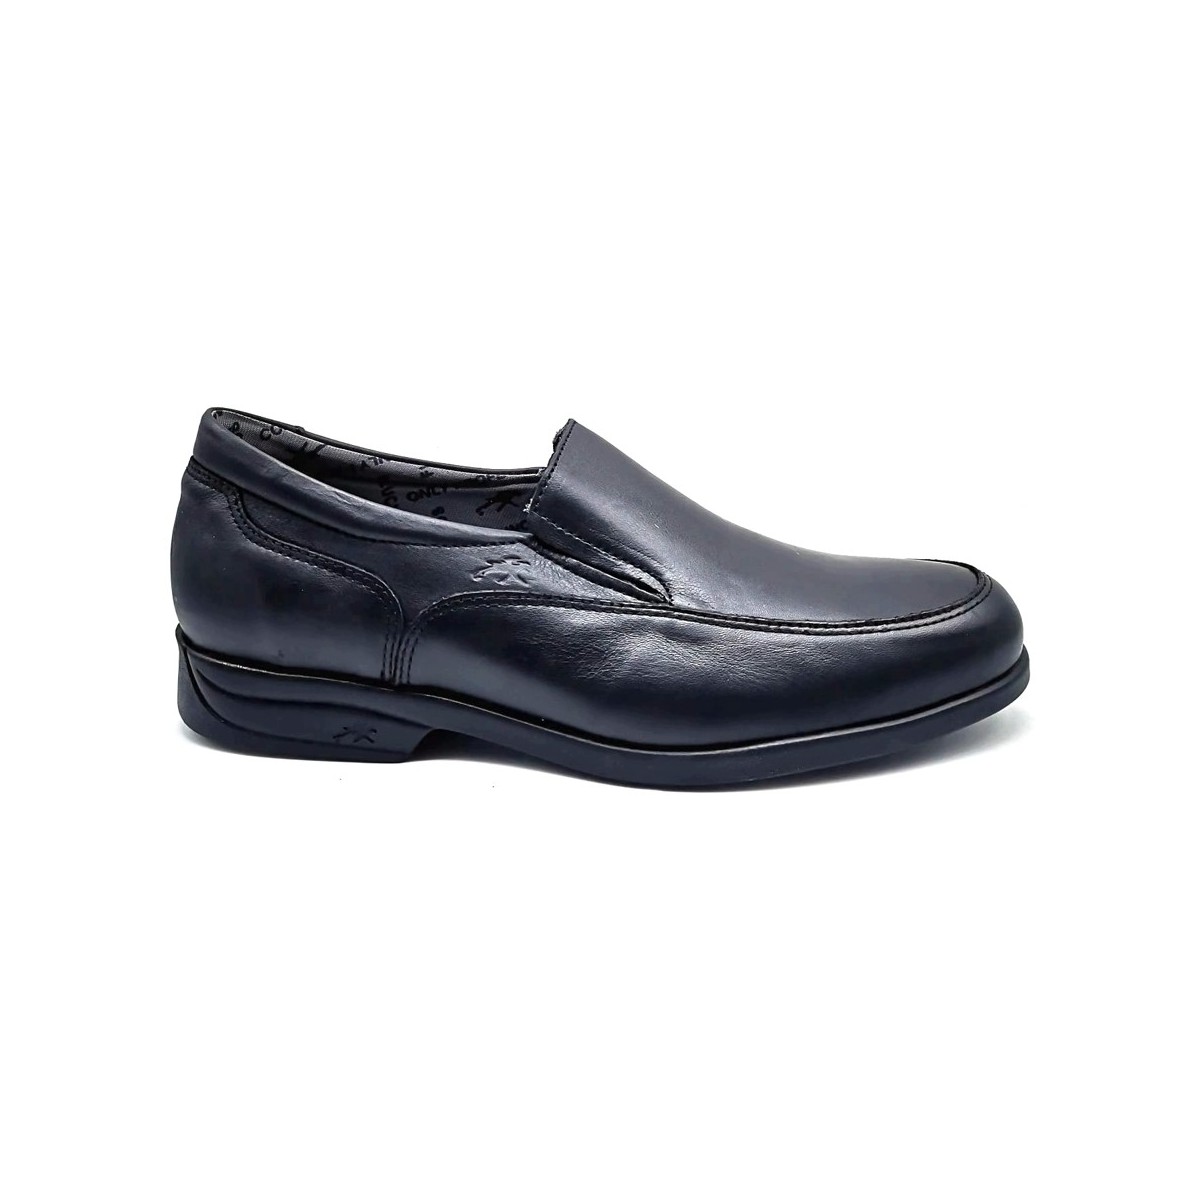 Zapatos Hombre Derbie Fluchos 8902 Negro